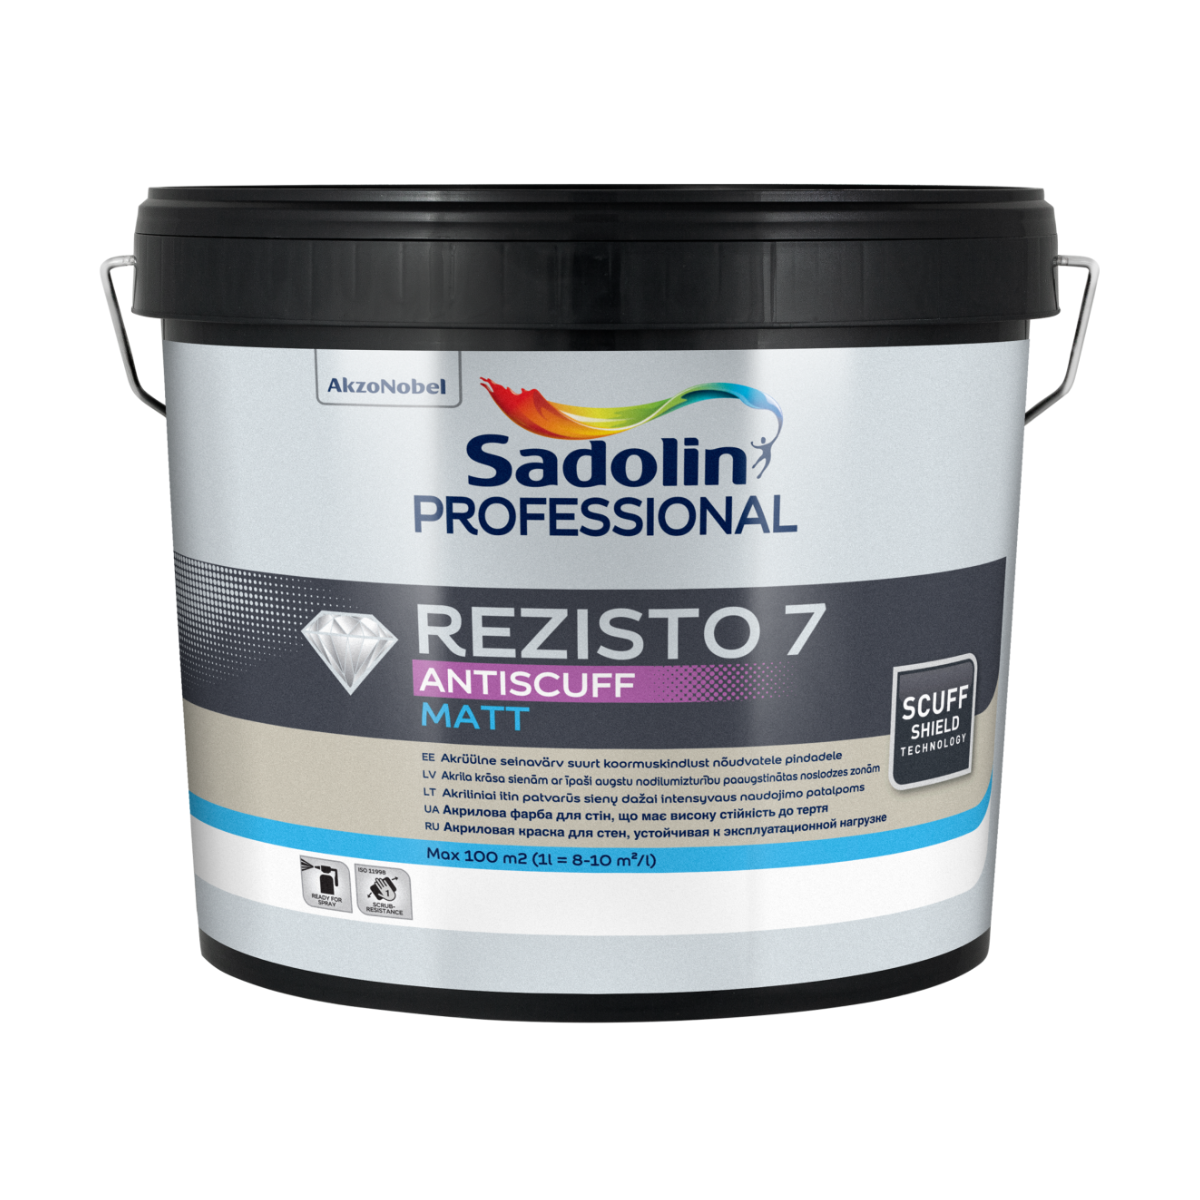 Sadolin Professional Rezisto 7 Antiscuff Matēta krāsa sienāmBW 10L